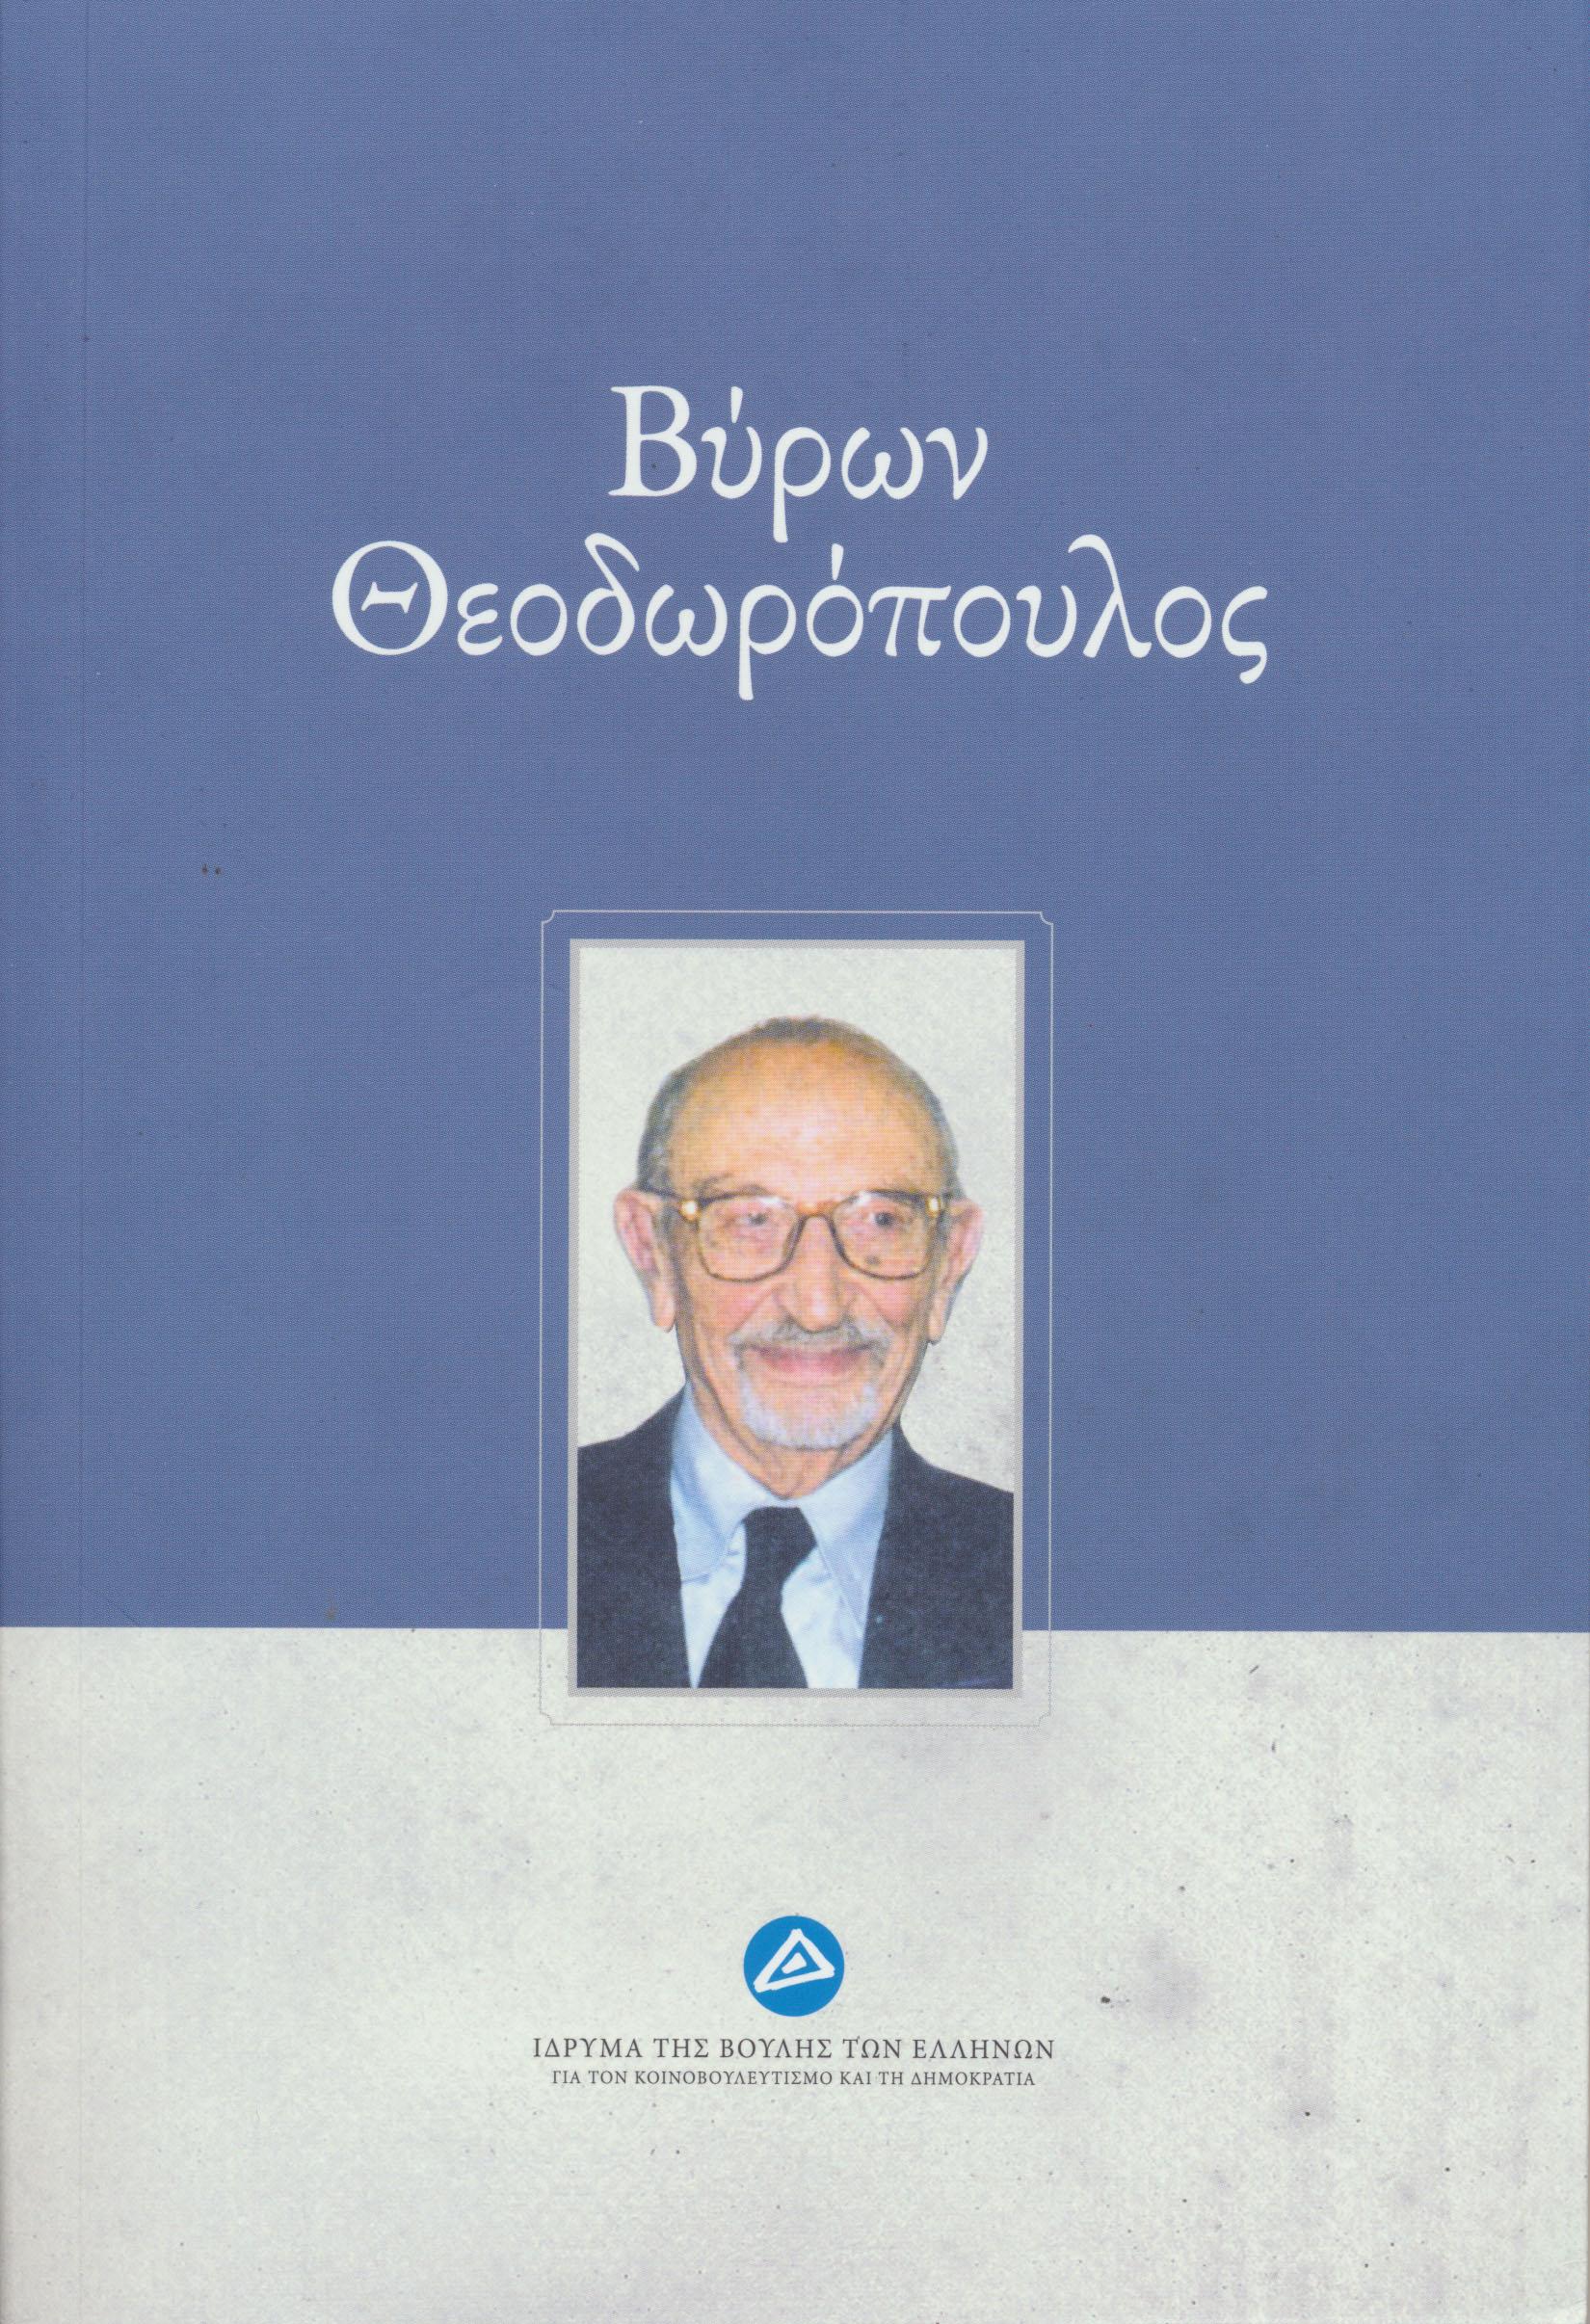 Θεοδωρόπουλος